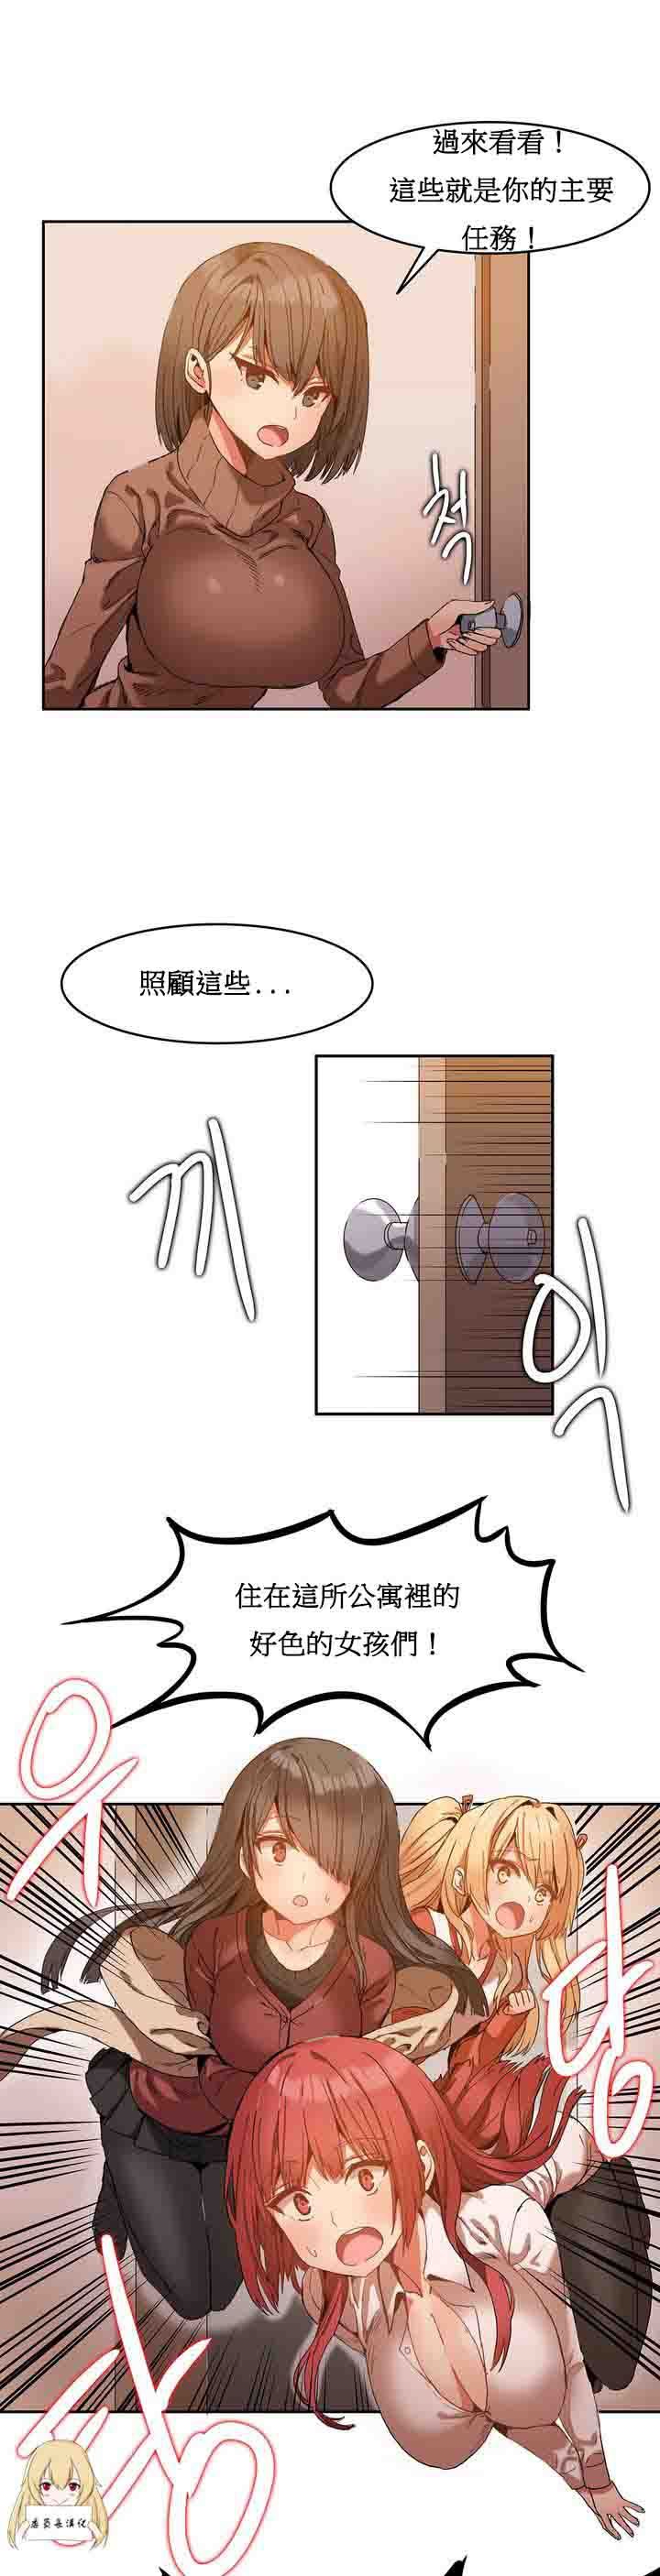 韩国污漫画 寄宿公寓-陰氣之洞 第1话 26